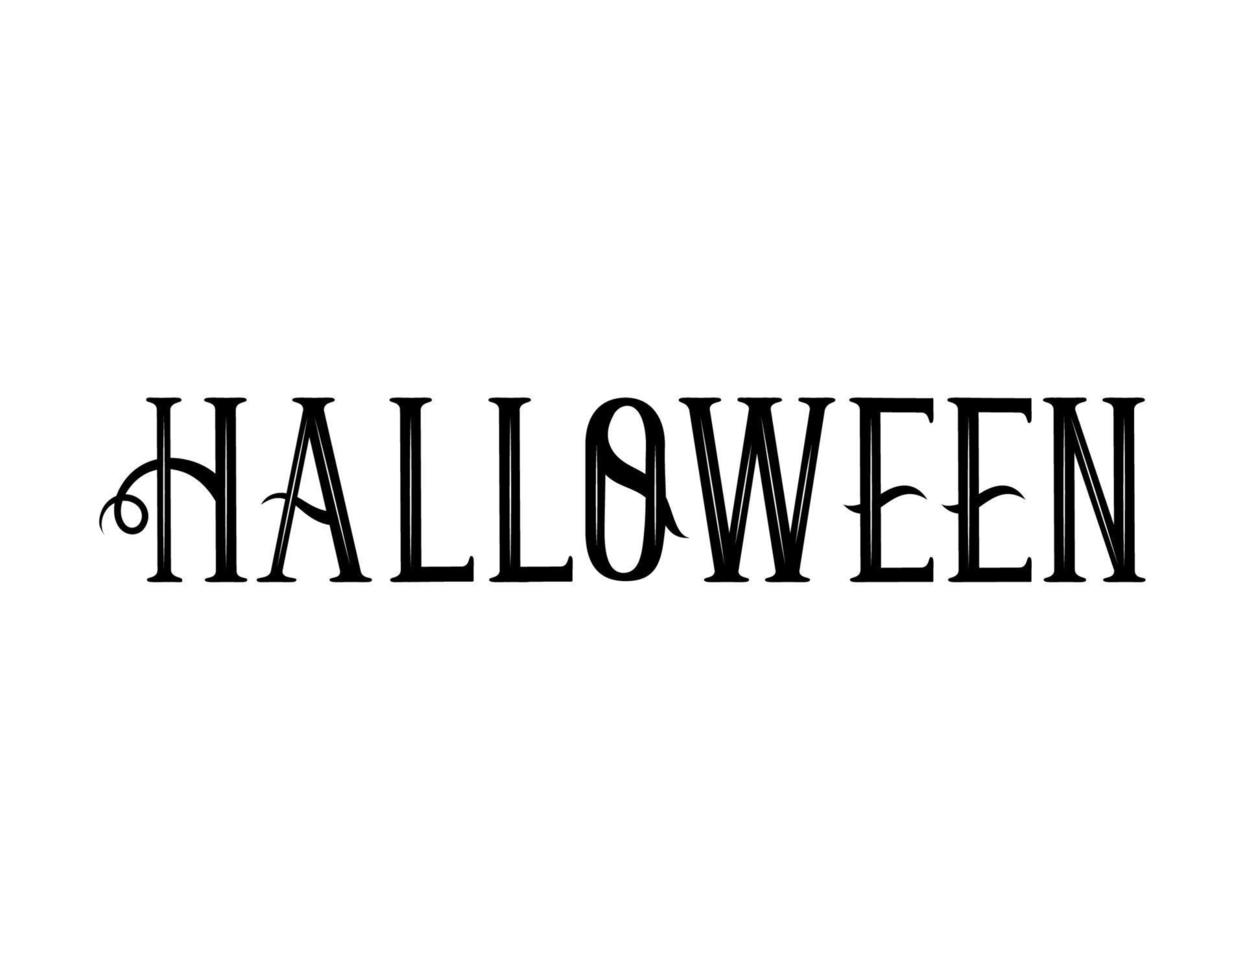 dark halloween lettering vector